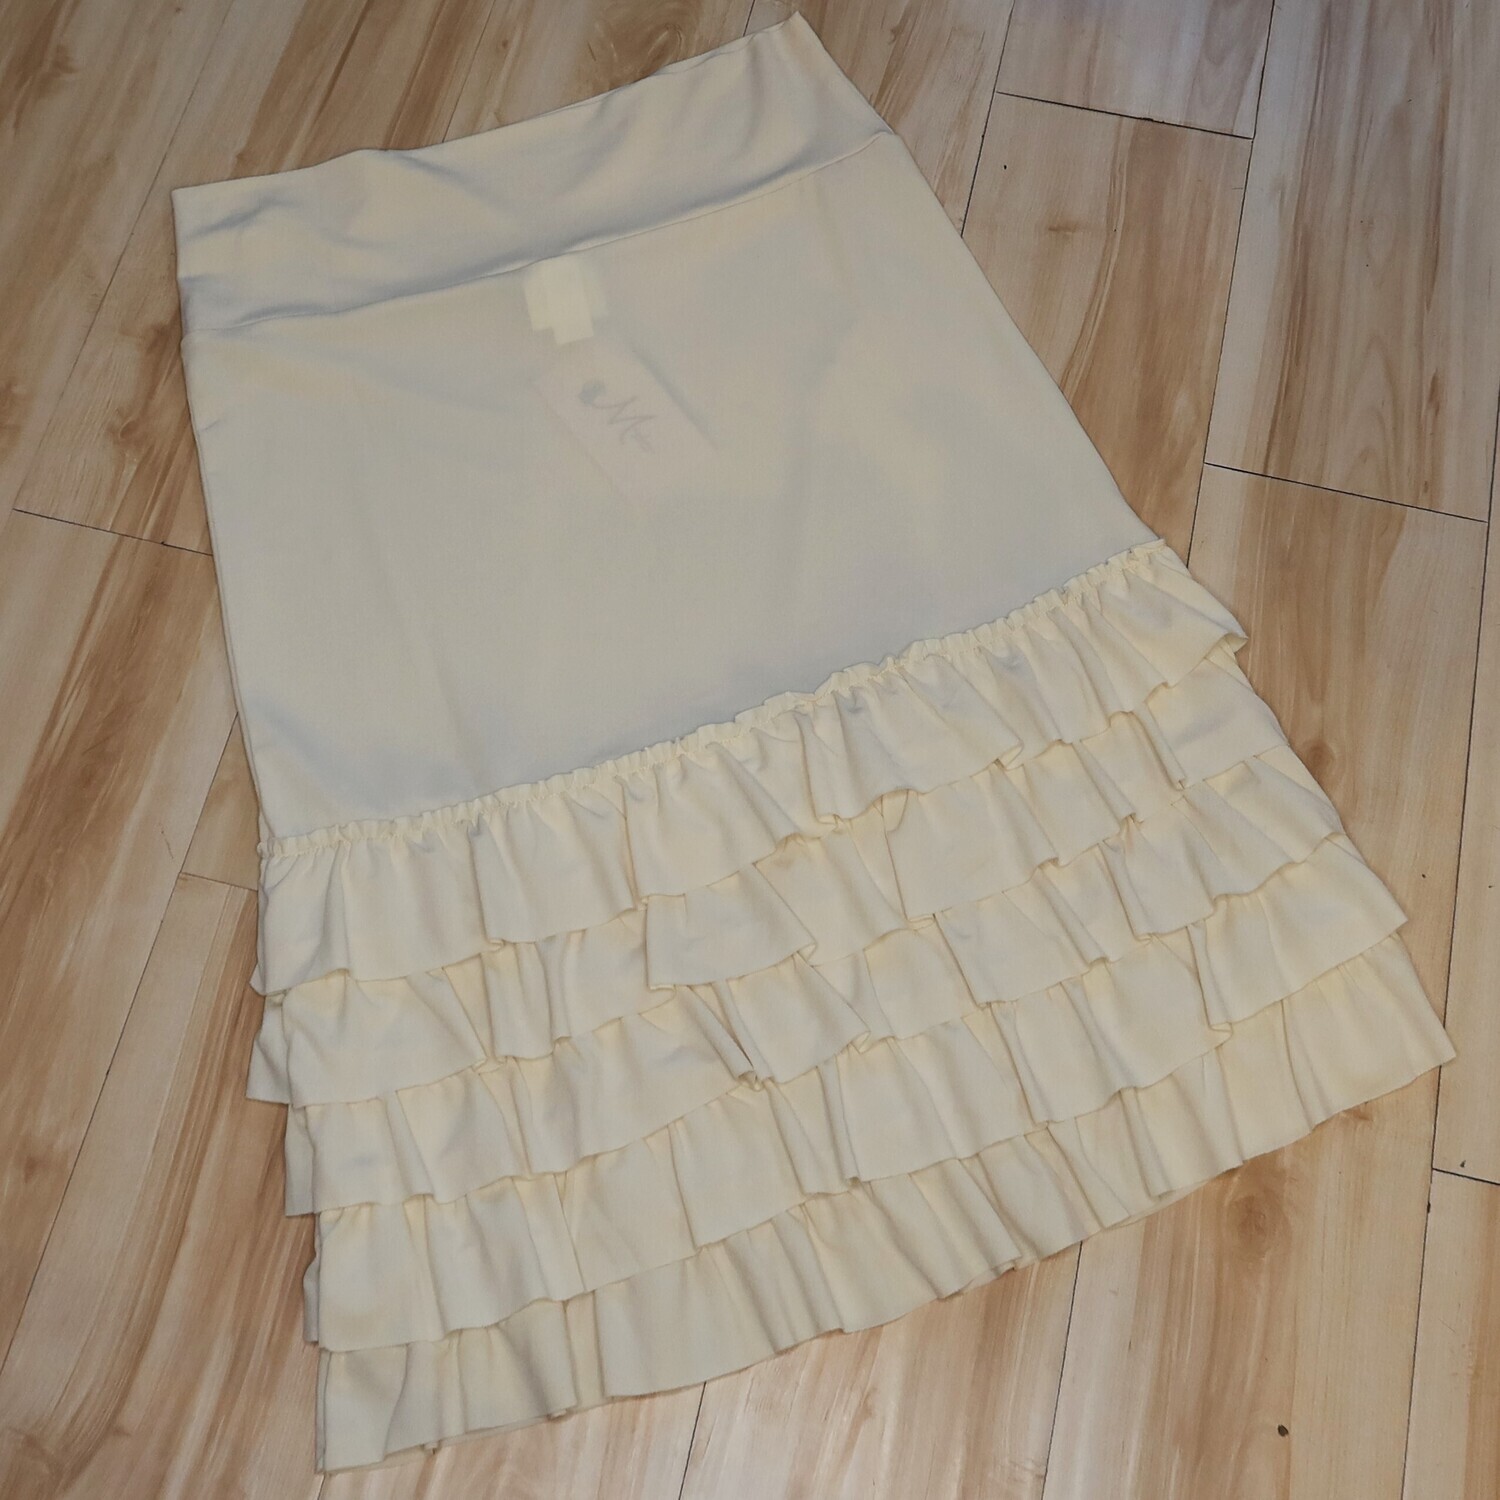 white ruffle skirt